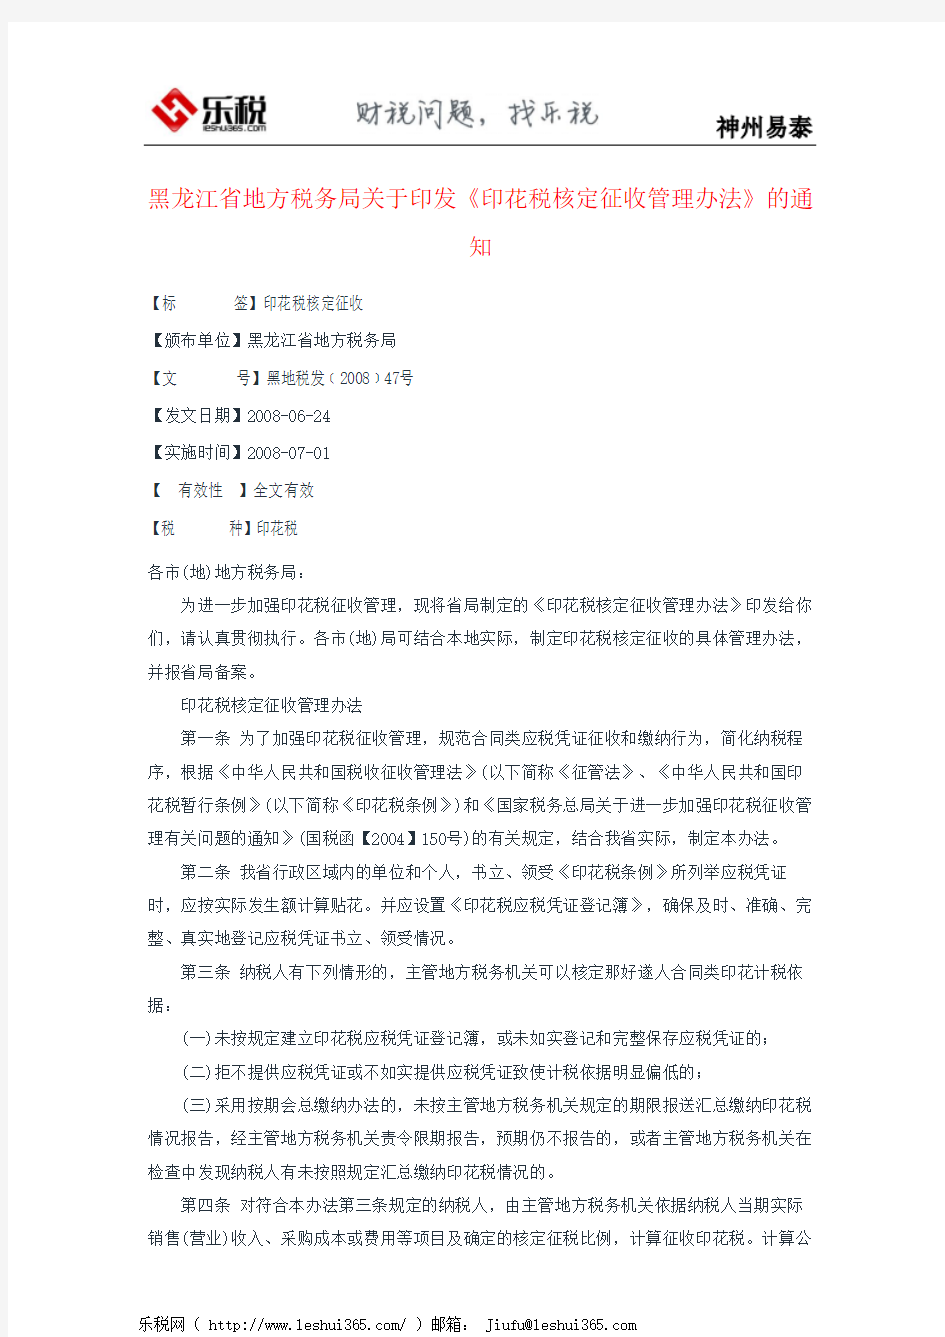 黑龙江省地方税务局关于印发《印花税核定征收管理办法》的通知